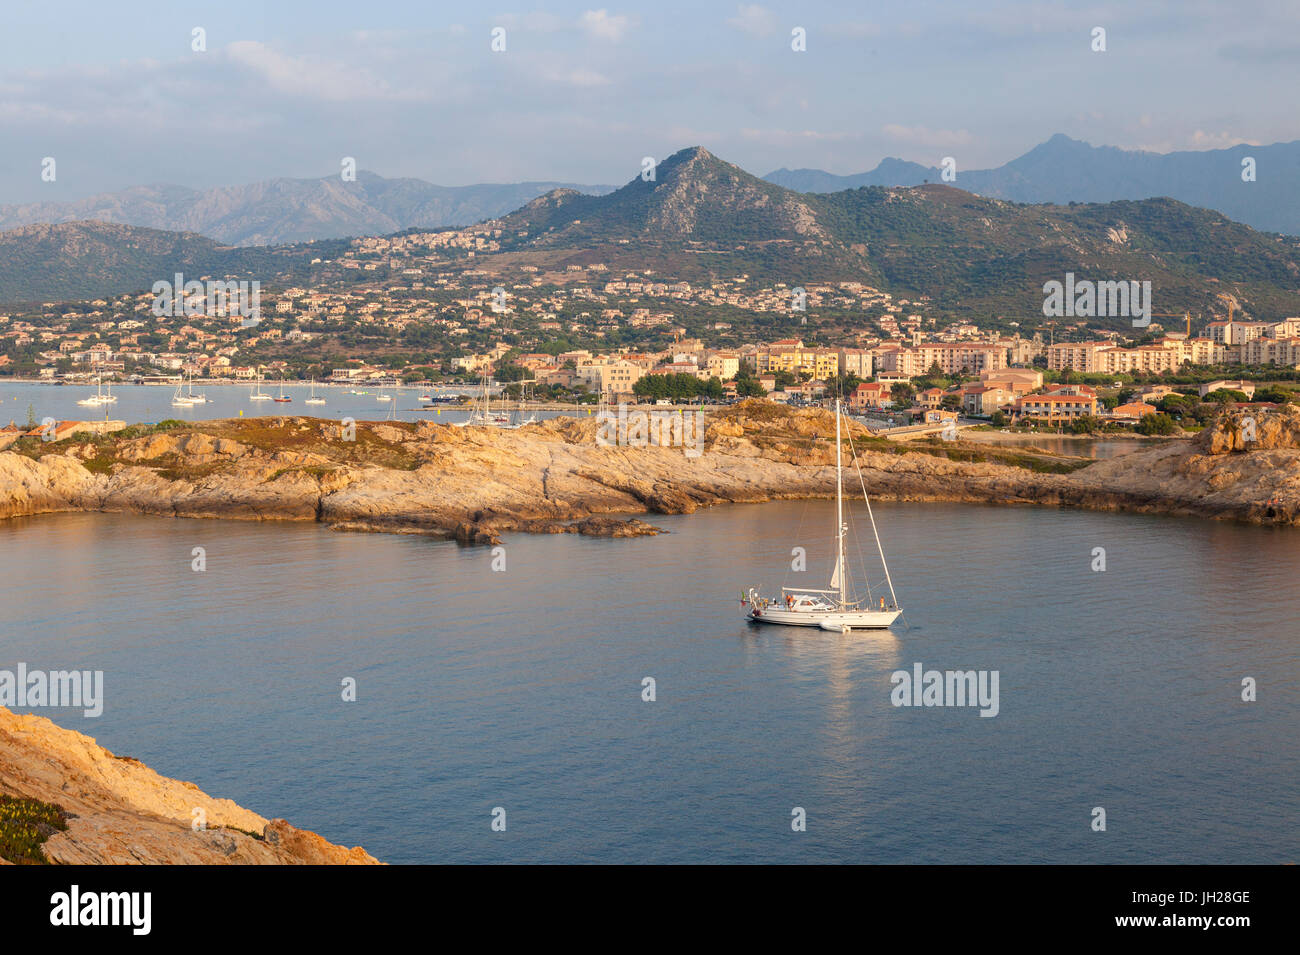 Un bote de vela en el mar claro alrededor de la aldea de Ile Rousse al atardecer, Región de Balagne, Córcega, Francia, el Mediterráneo, Europa Foto de stock